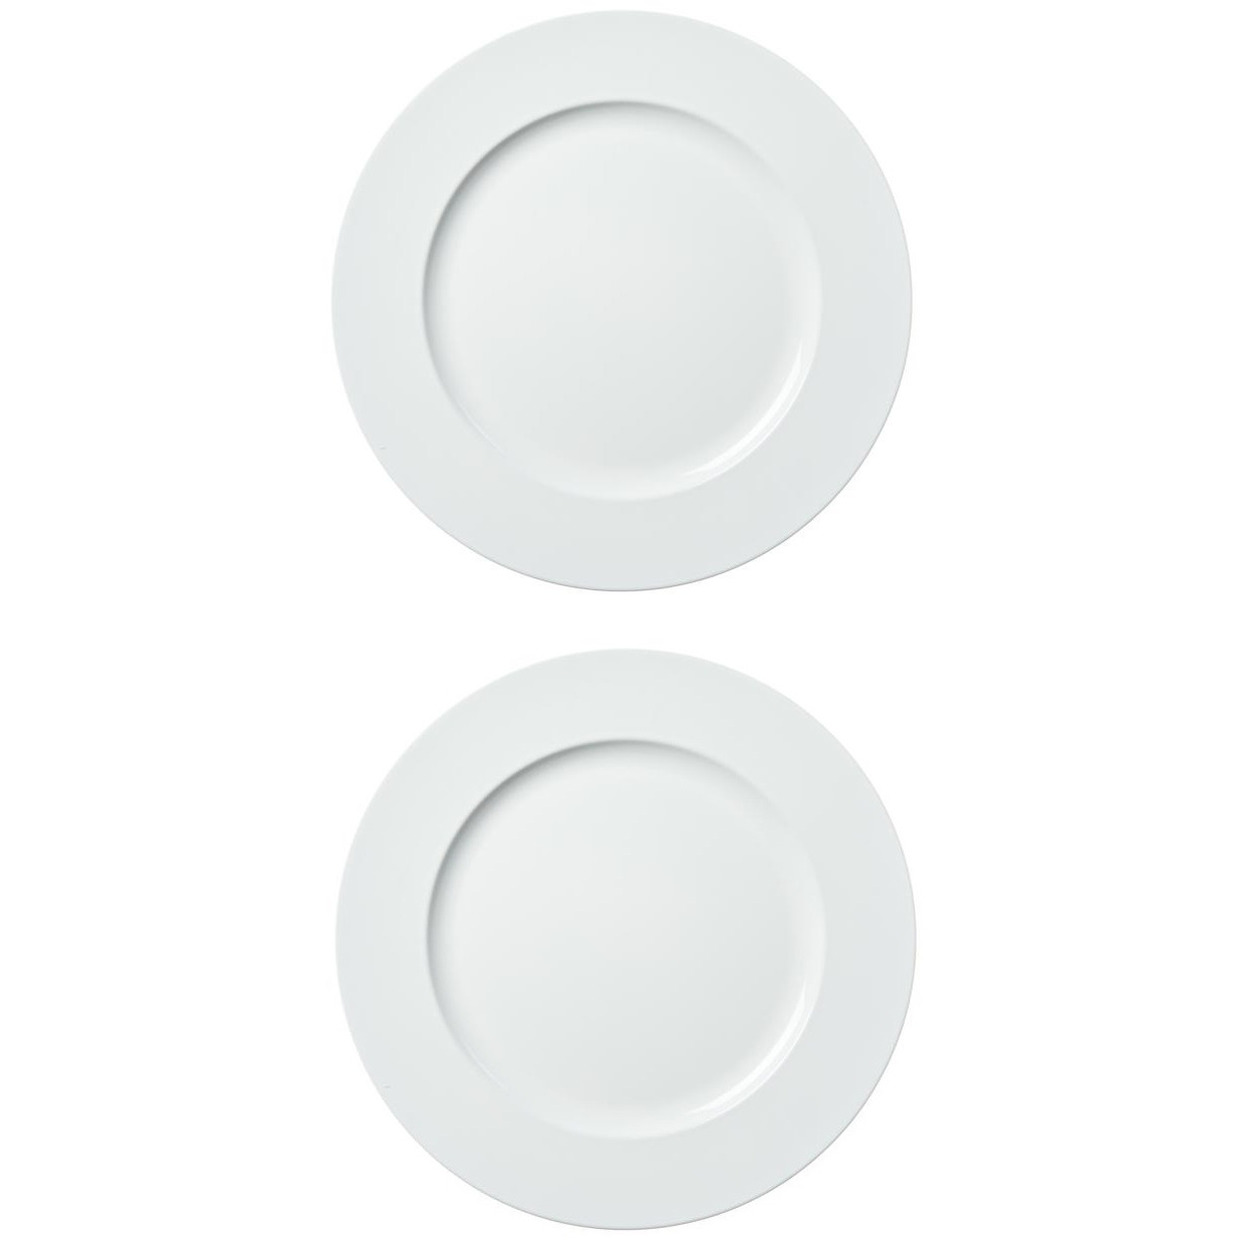 12x stuks diner borden-onderborden wit 33 cm